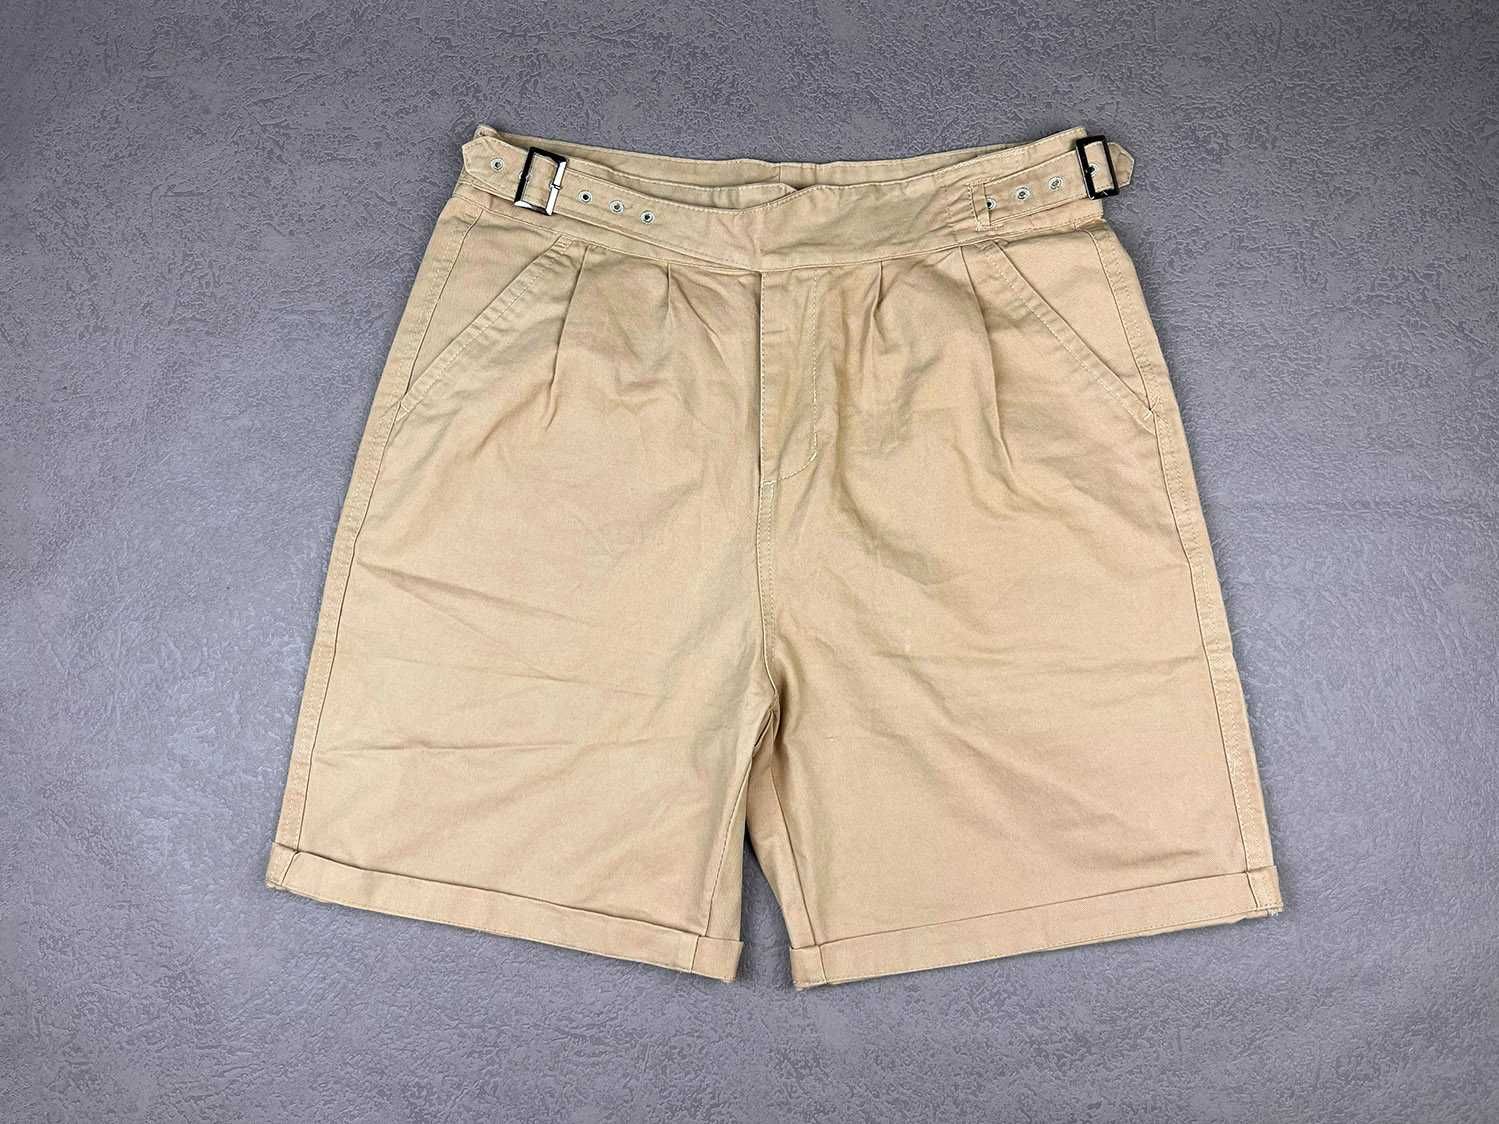 NOWE krótkie spodenki gurkha spodnie szorty beżowe męskie letnie M 48